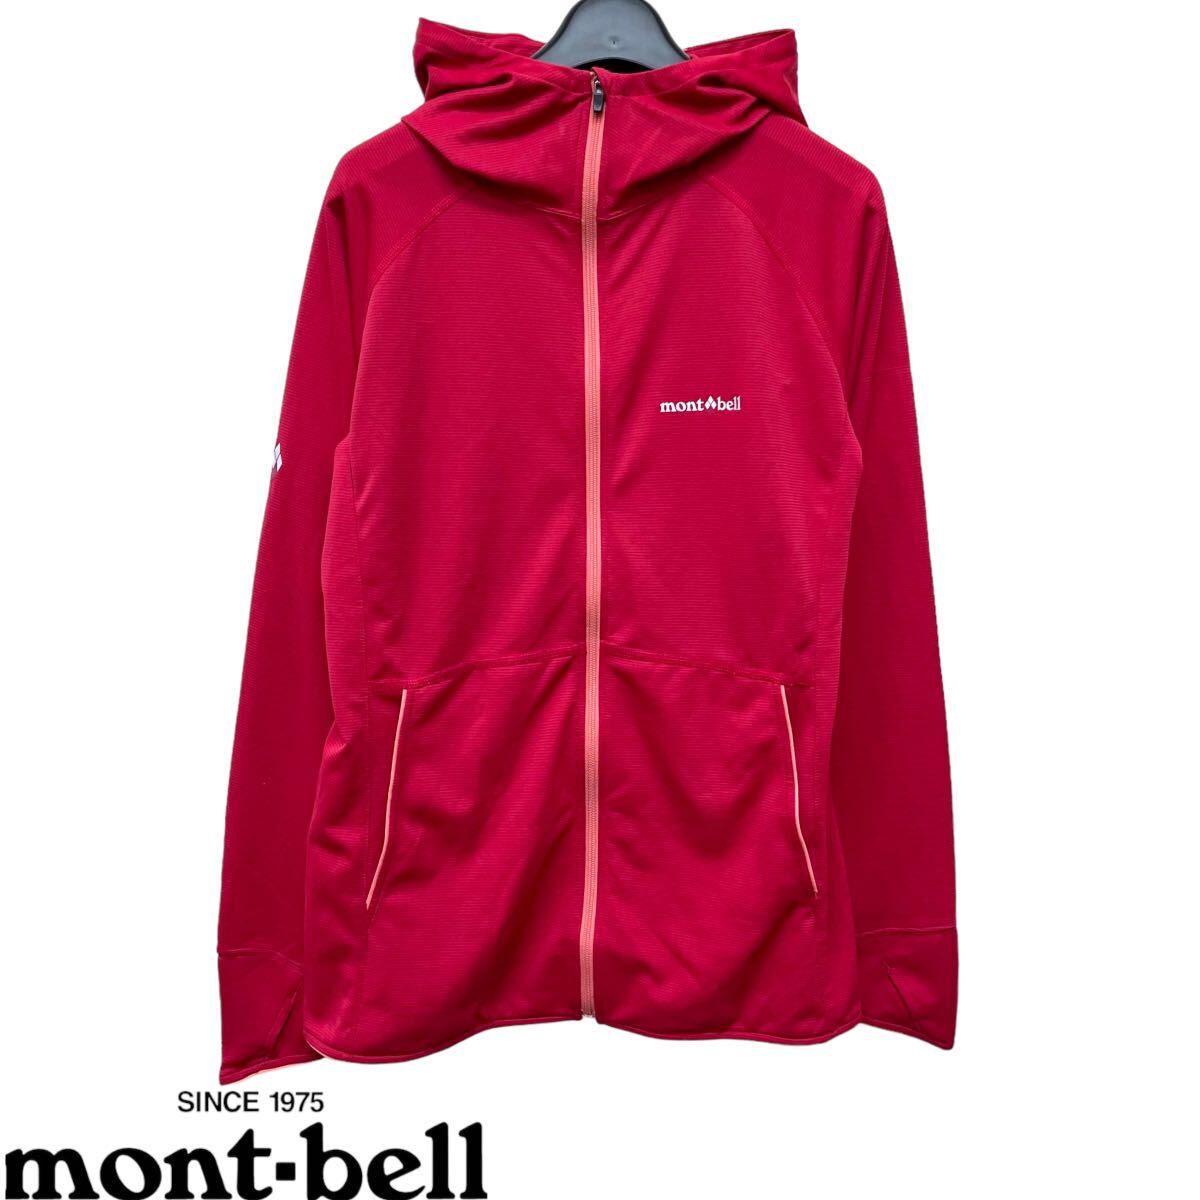 mont-bell /モンベル WOMEN's クールパーカ フルジップ フーディ ジャケット ピンク系 Mサイズ 裏地メッシュ 春夏パーカー O-2086の画像1